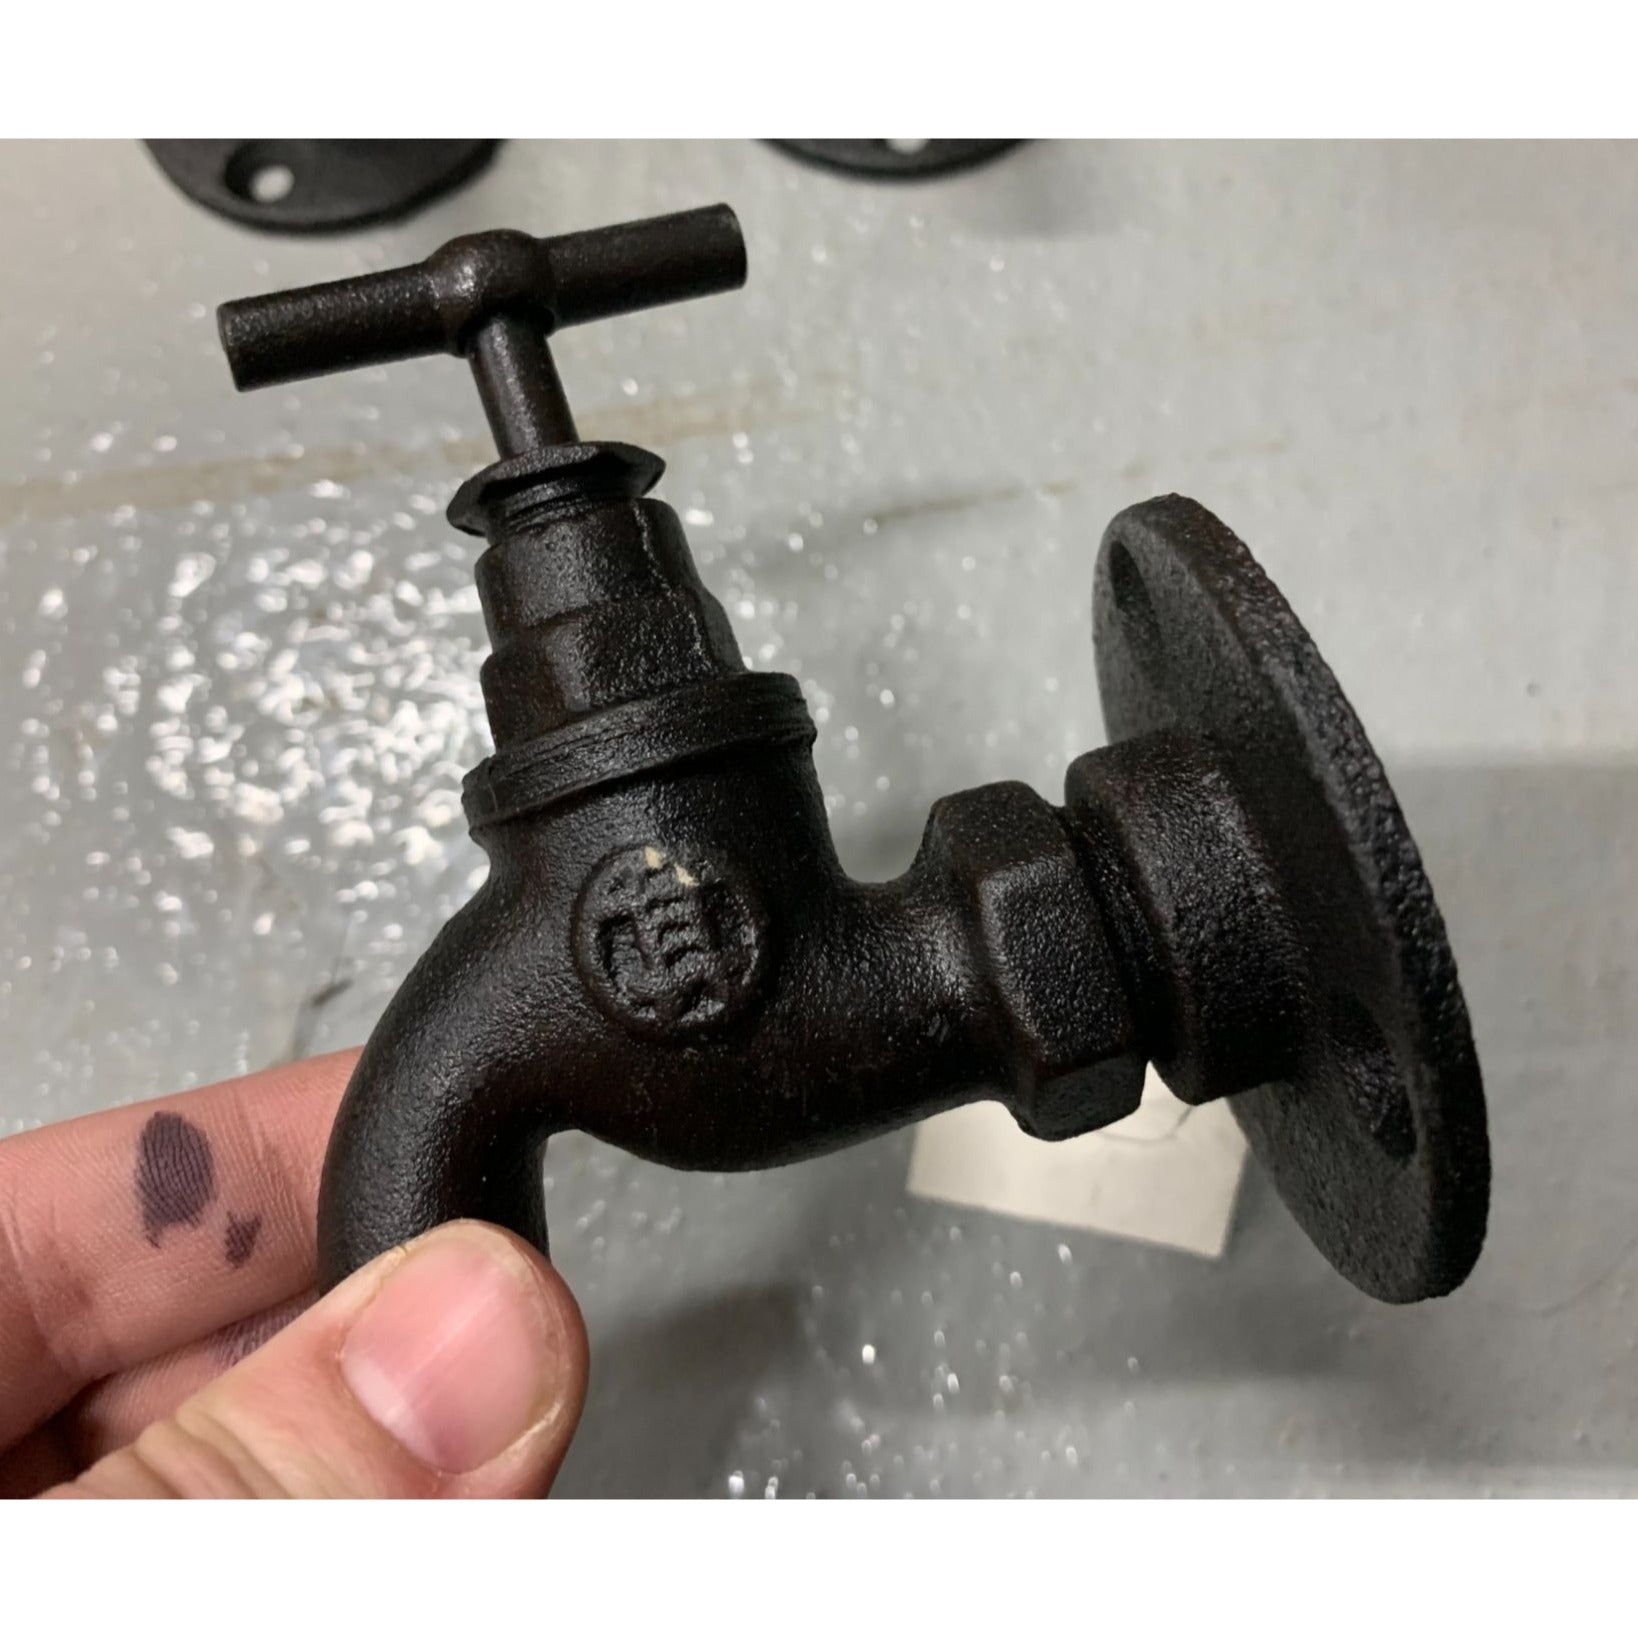 Vintage Metal Faucet Spigot Valve Decor New with Tags